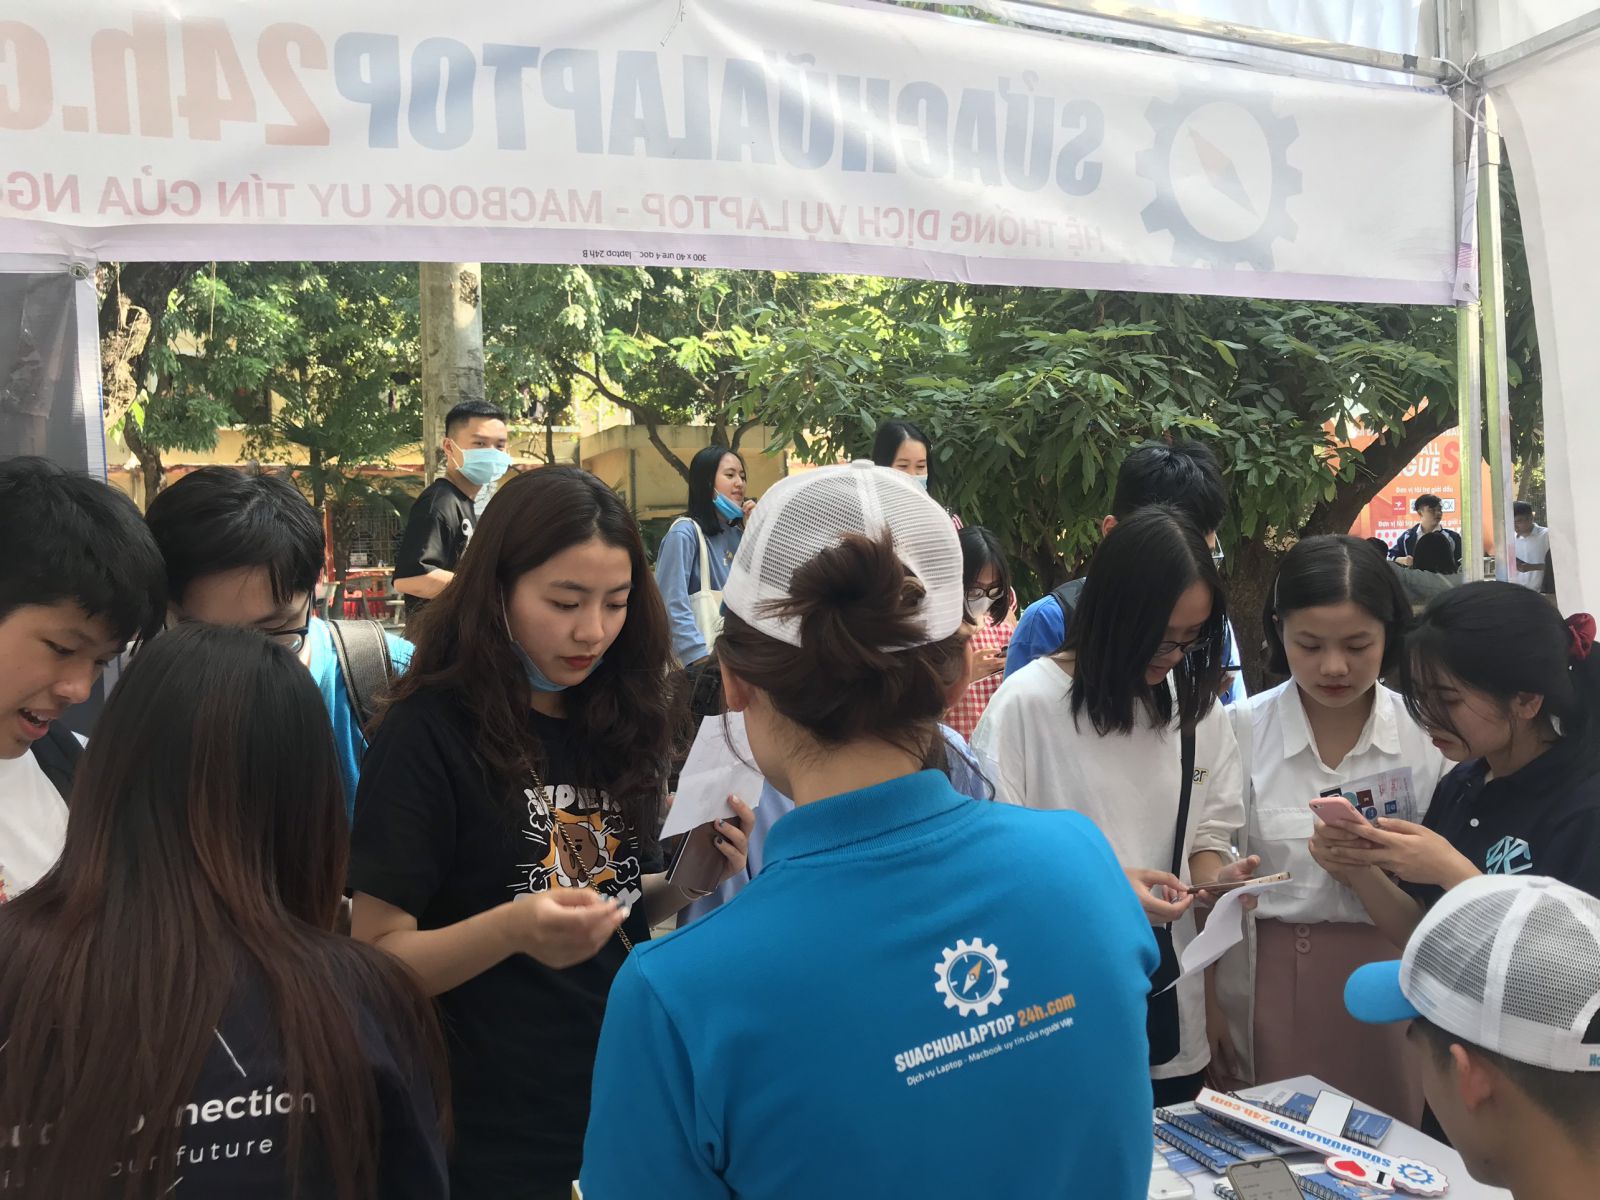 SUACHUALAPTOP24h.com đồng hành cùng sự kiện chào tân sinh viên trường Đại học Kinh tế quốc dân NEU Youth Festival 2020